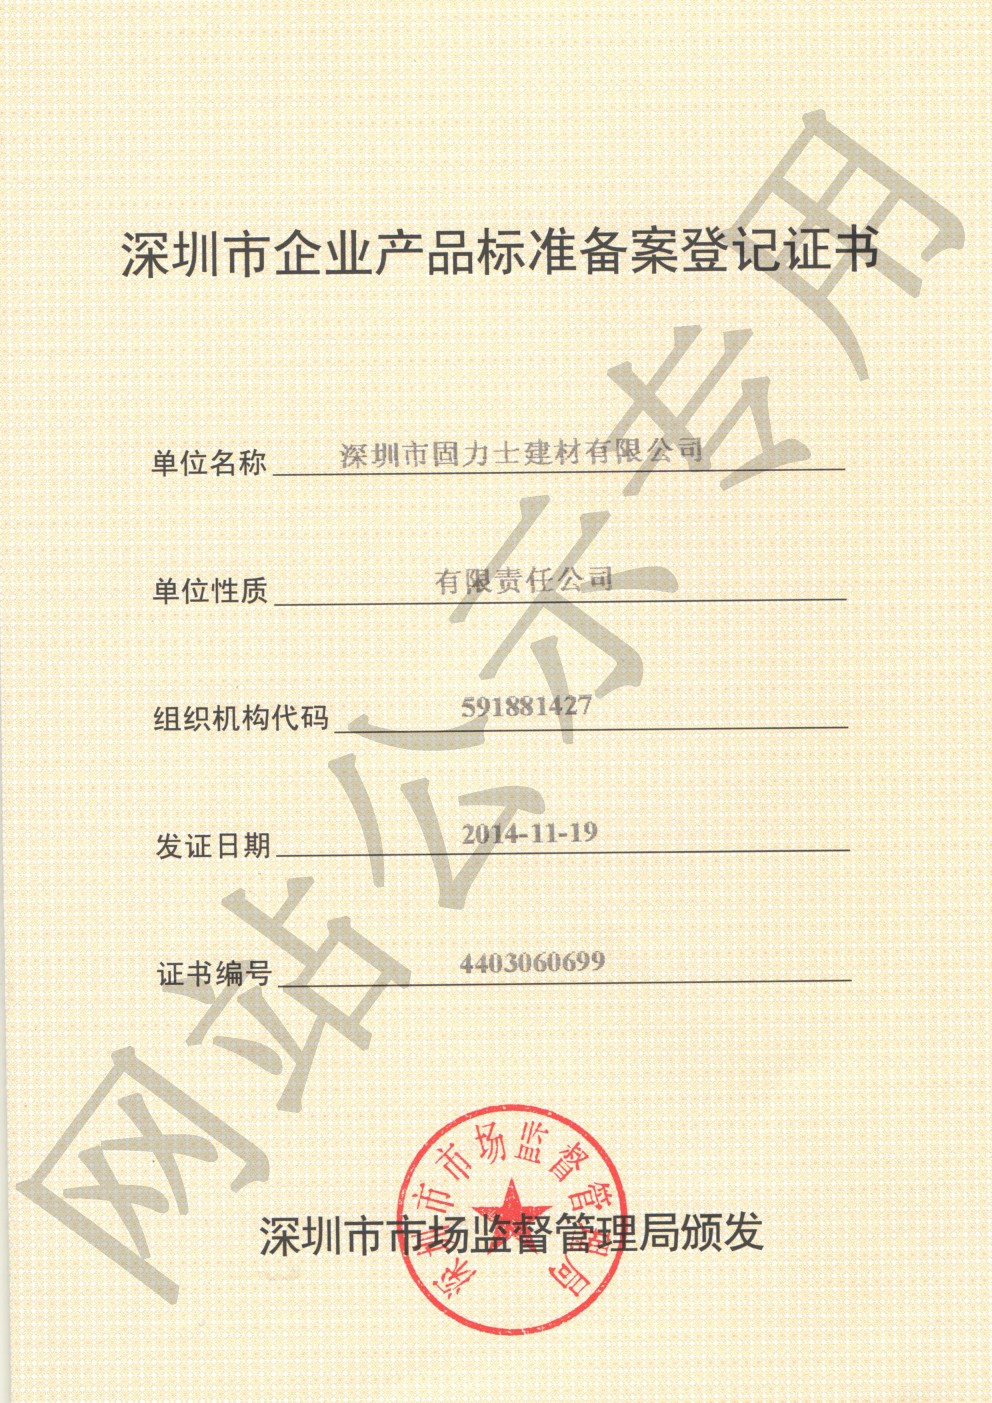 阿克陶企业产品标准登记证书